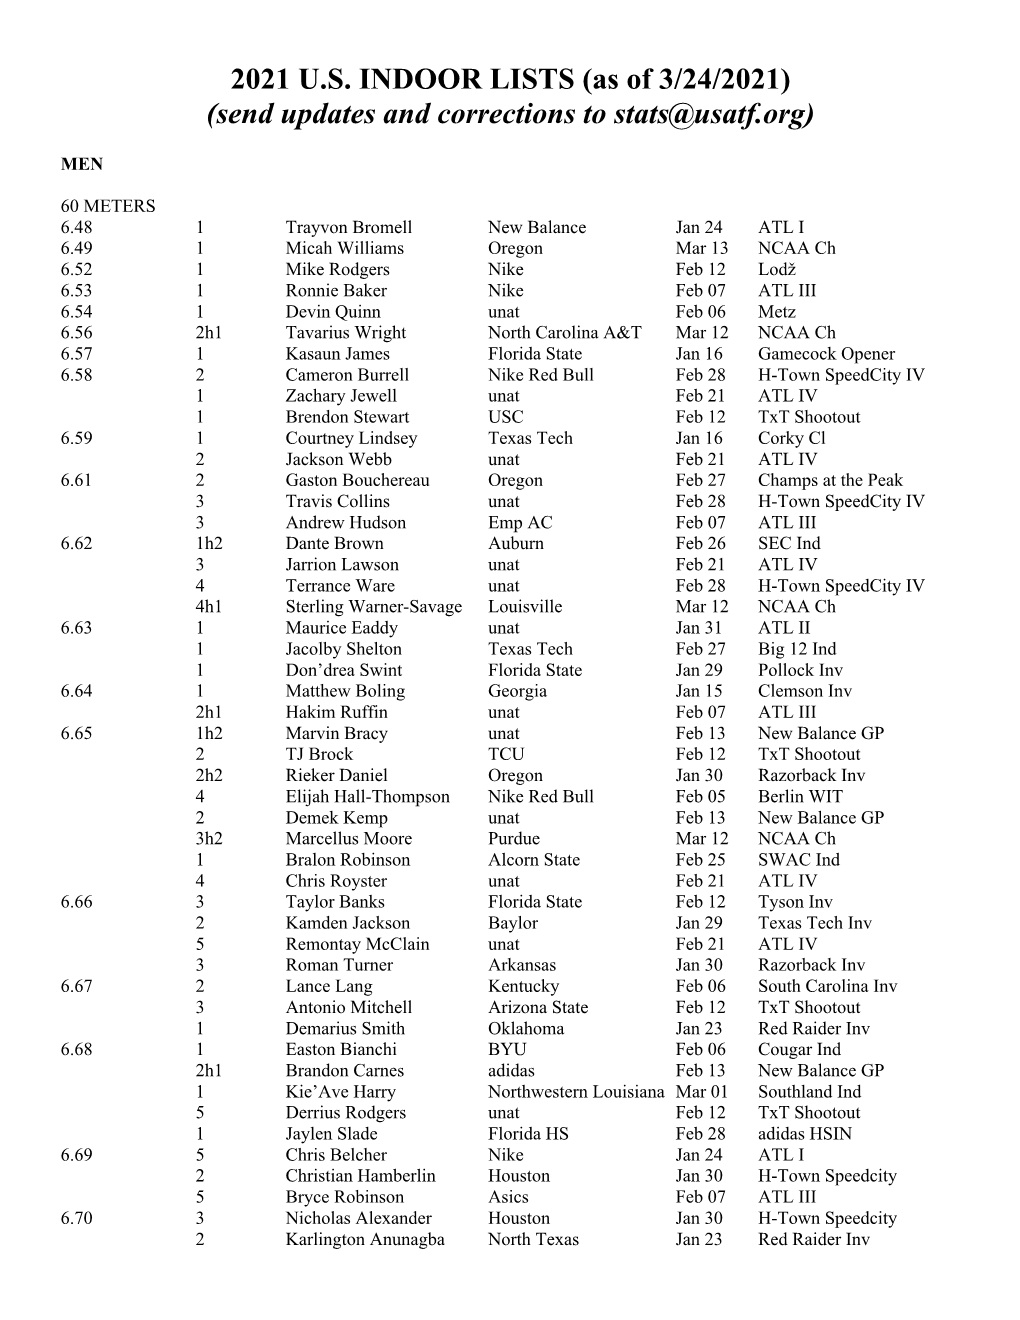 03-24-21 US Indoor List